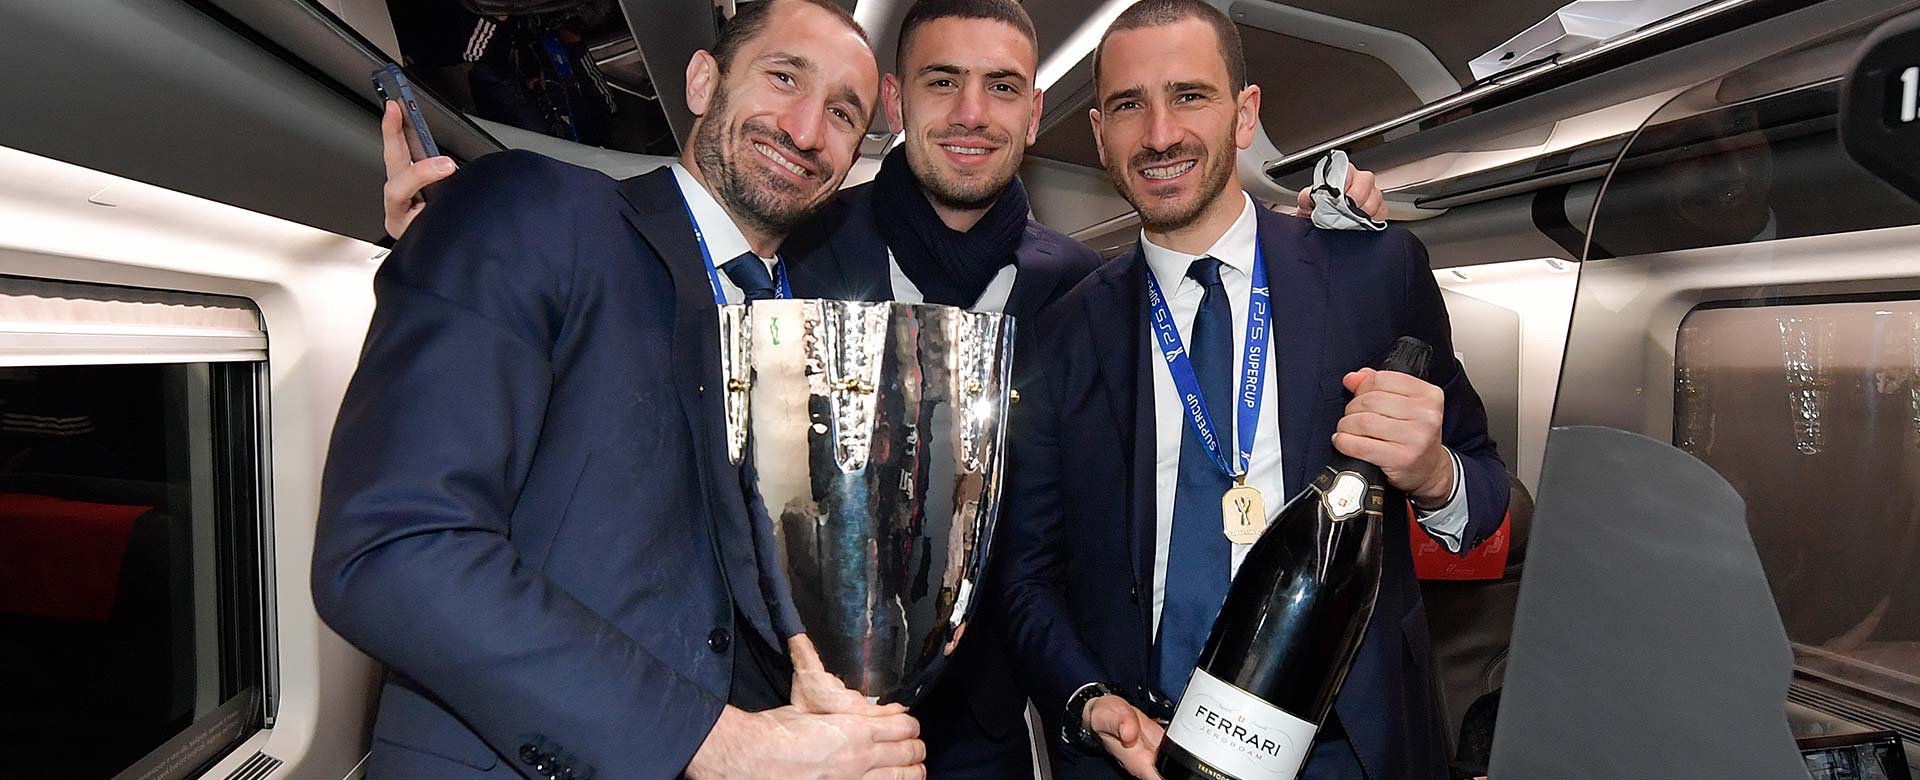 I calciatori della Juventus Giorgio Chiellini, Merih Demiral e Leonardo Bonucci in viaggio sul Frecciarossa verso Torino con la Supercoppa Italiana tra le mani